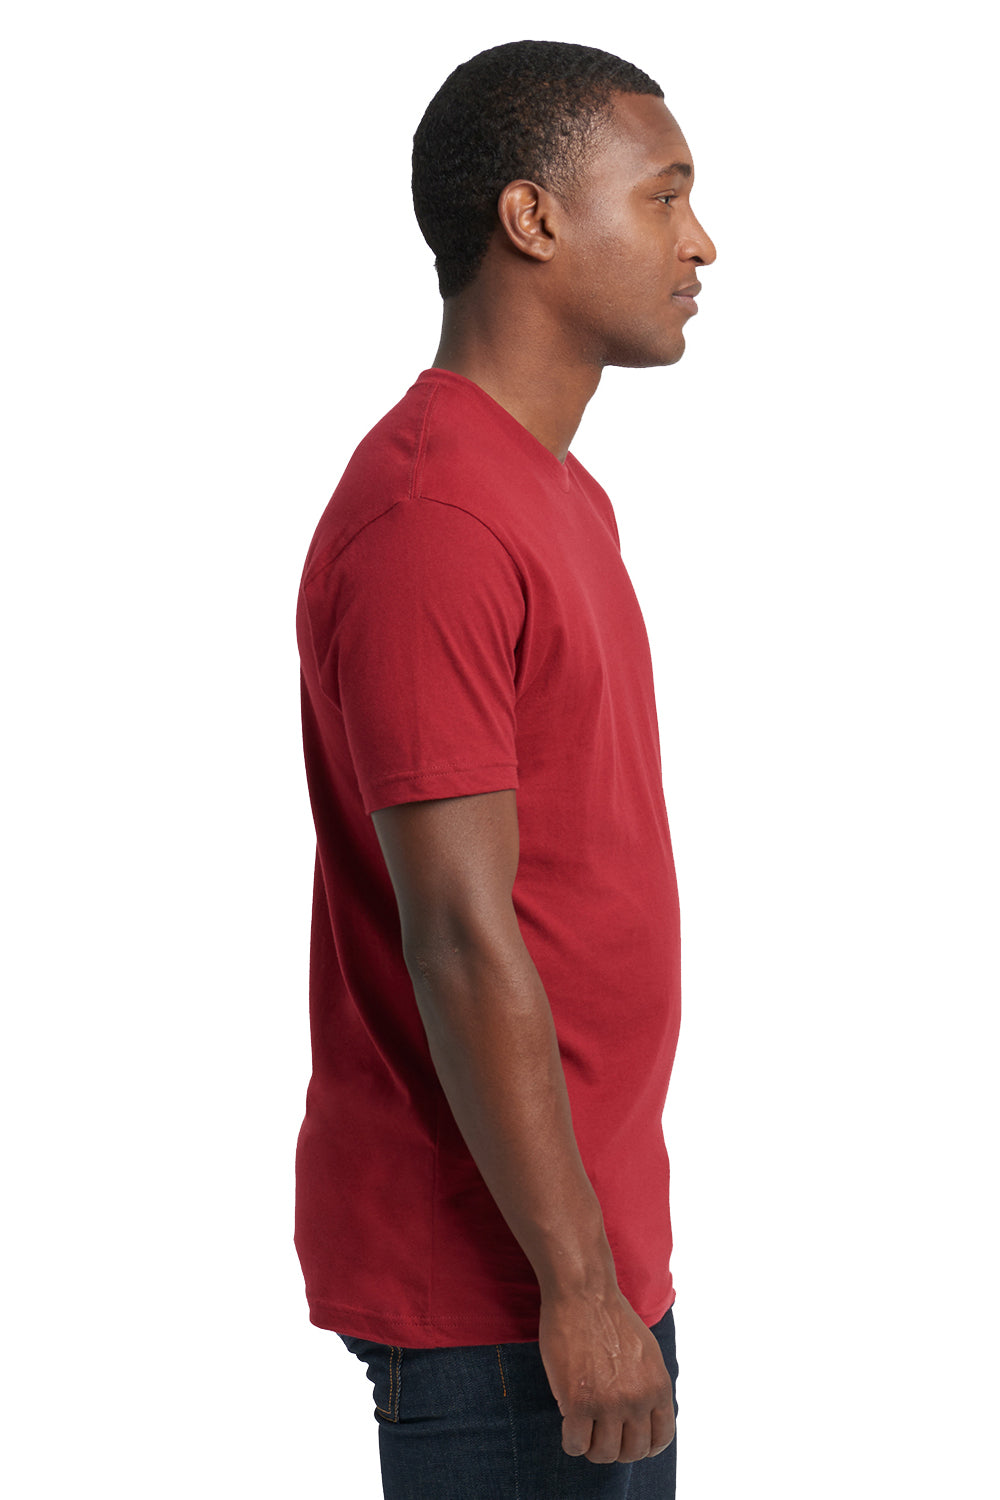 Next Level 3600 Mens Fine Jersey Short Sleeve Crewneck T-Shirt Cardinal Red Side